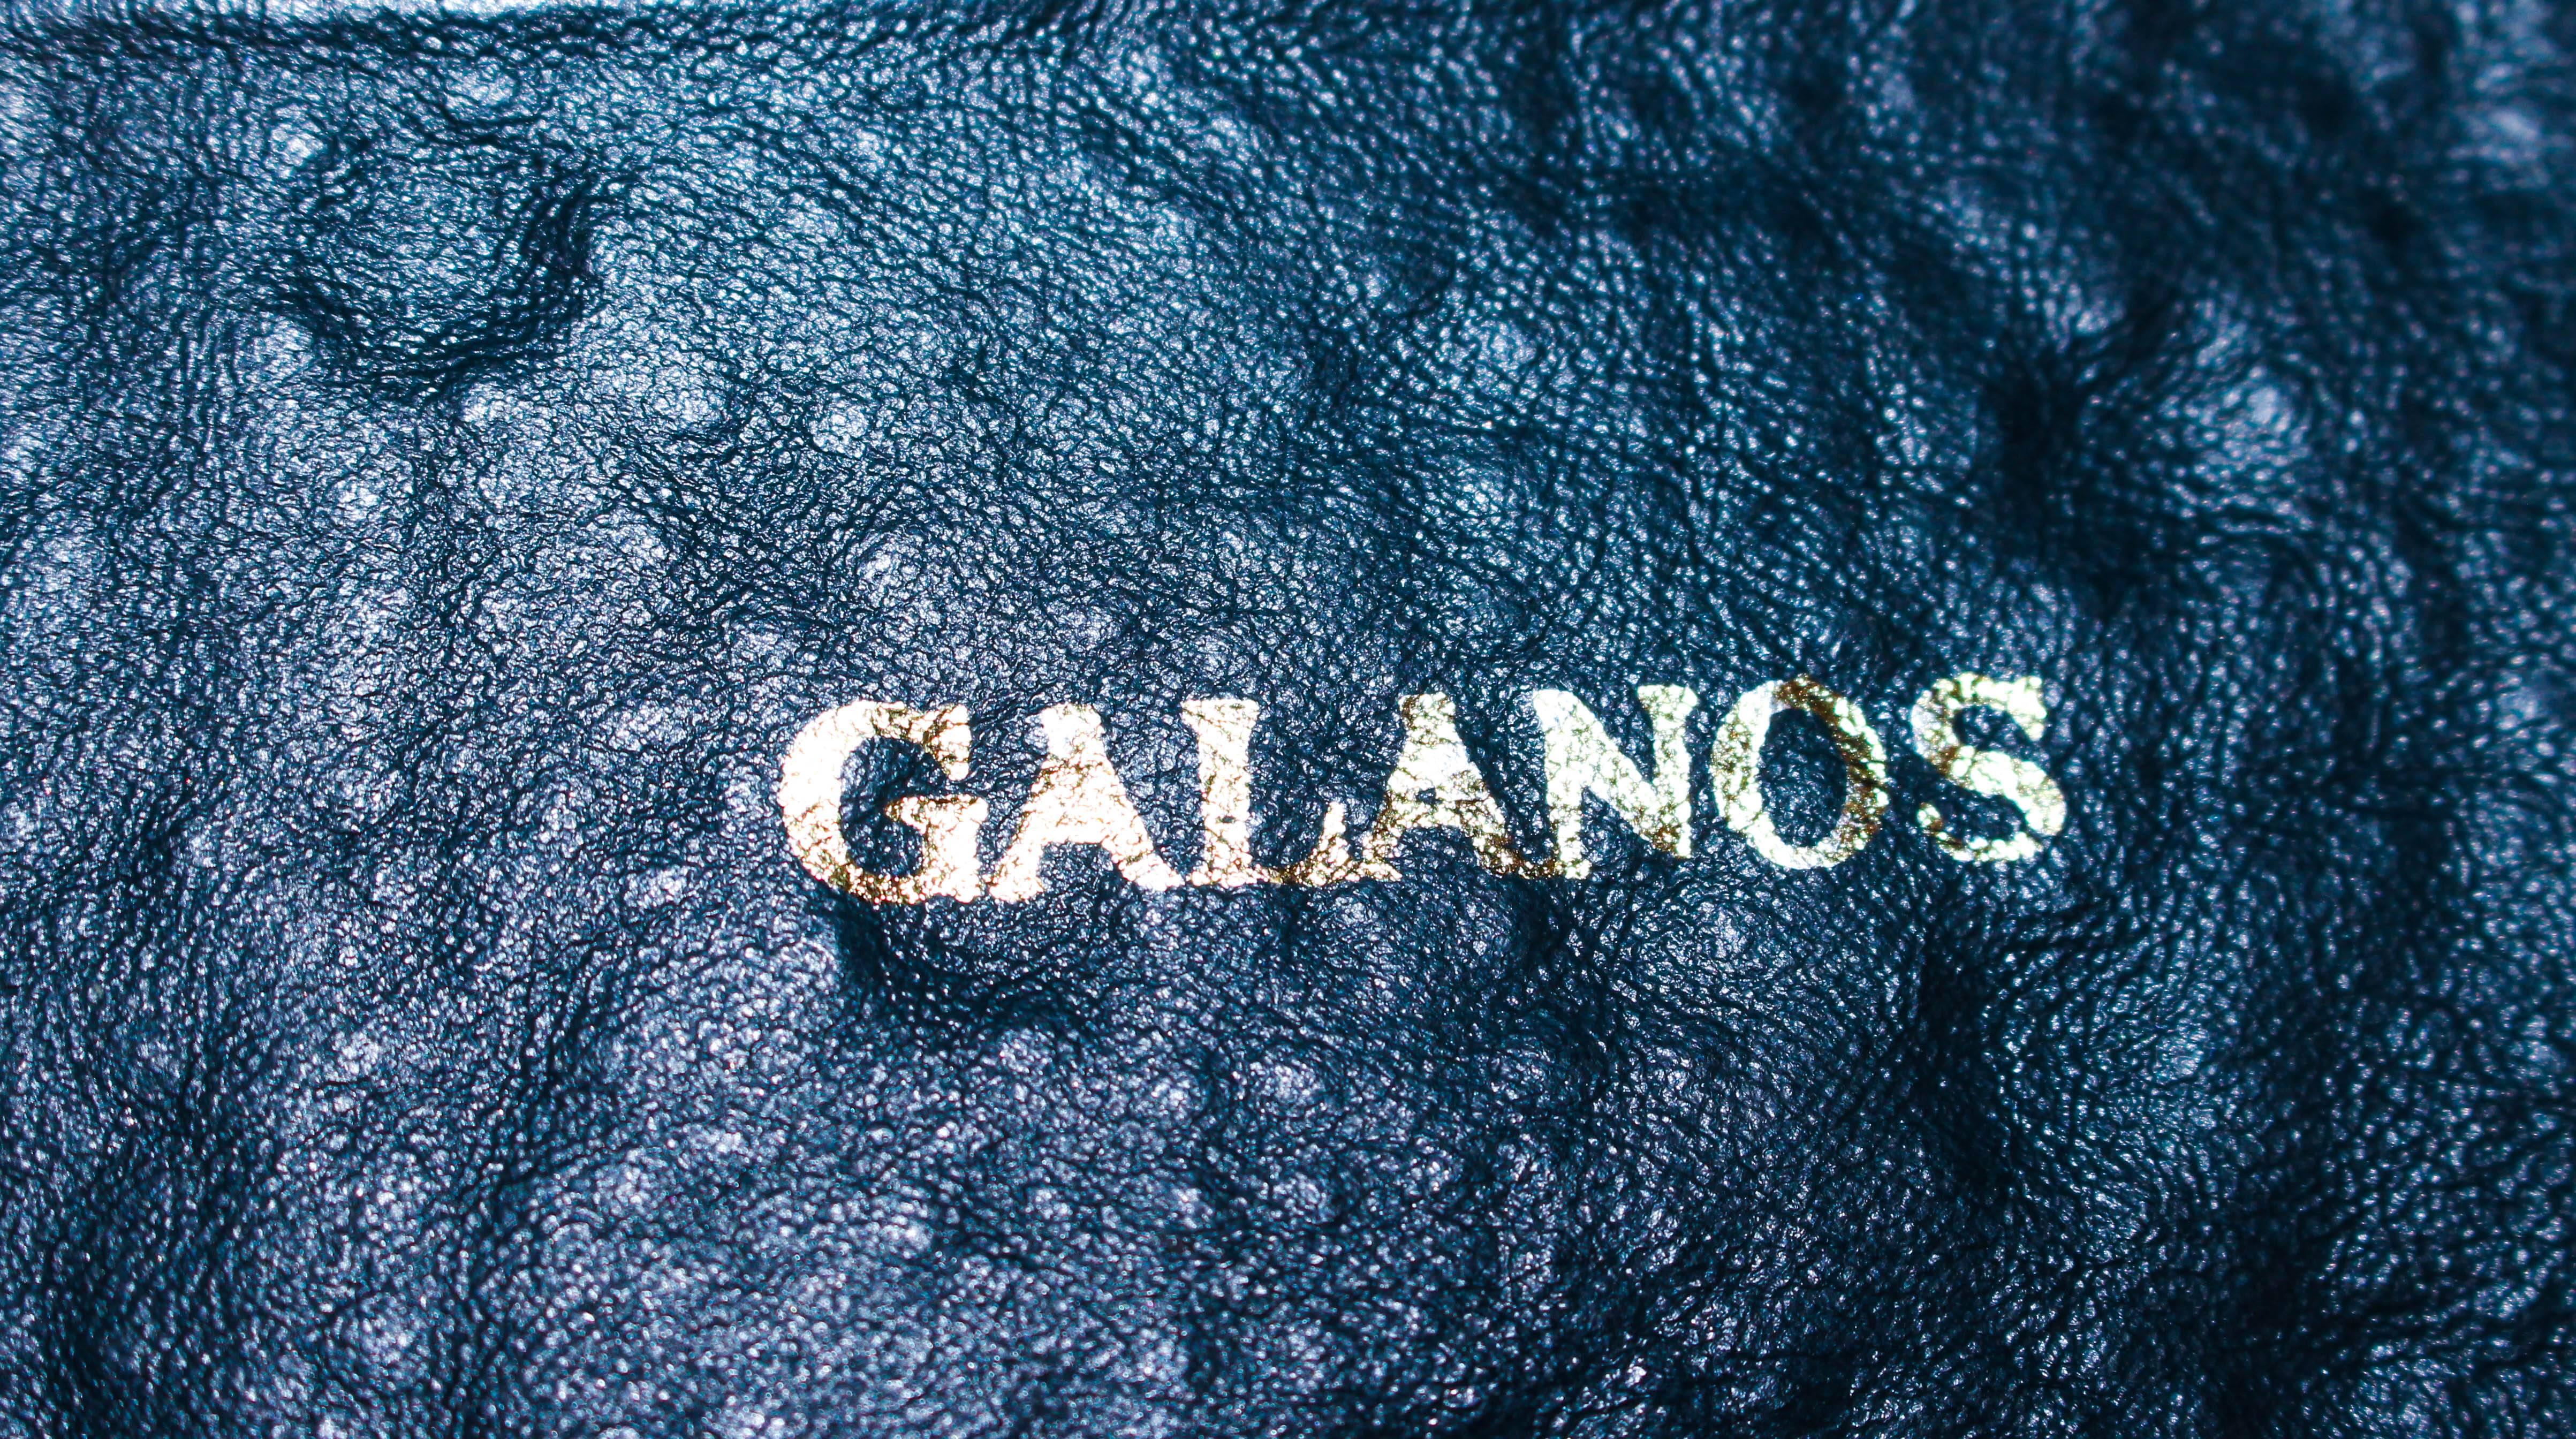 GALANOS Vinatge Navy Leather Gold Stud Applique Belt Size 4 6 4